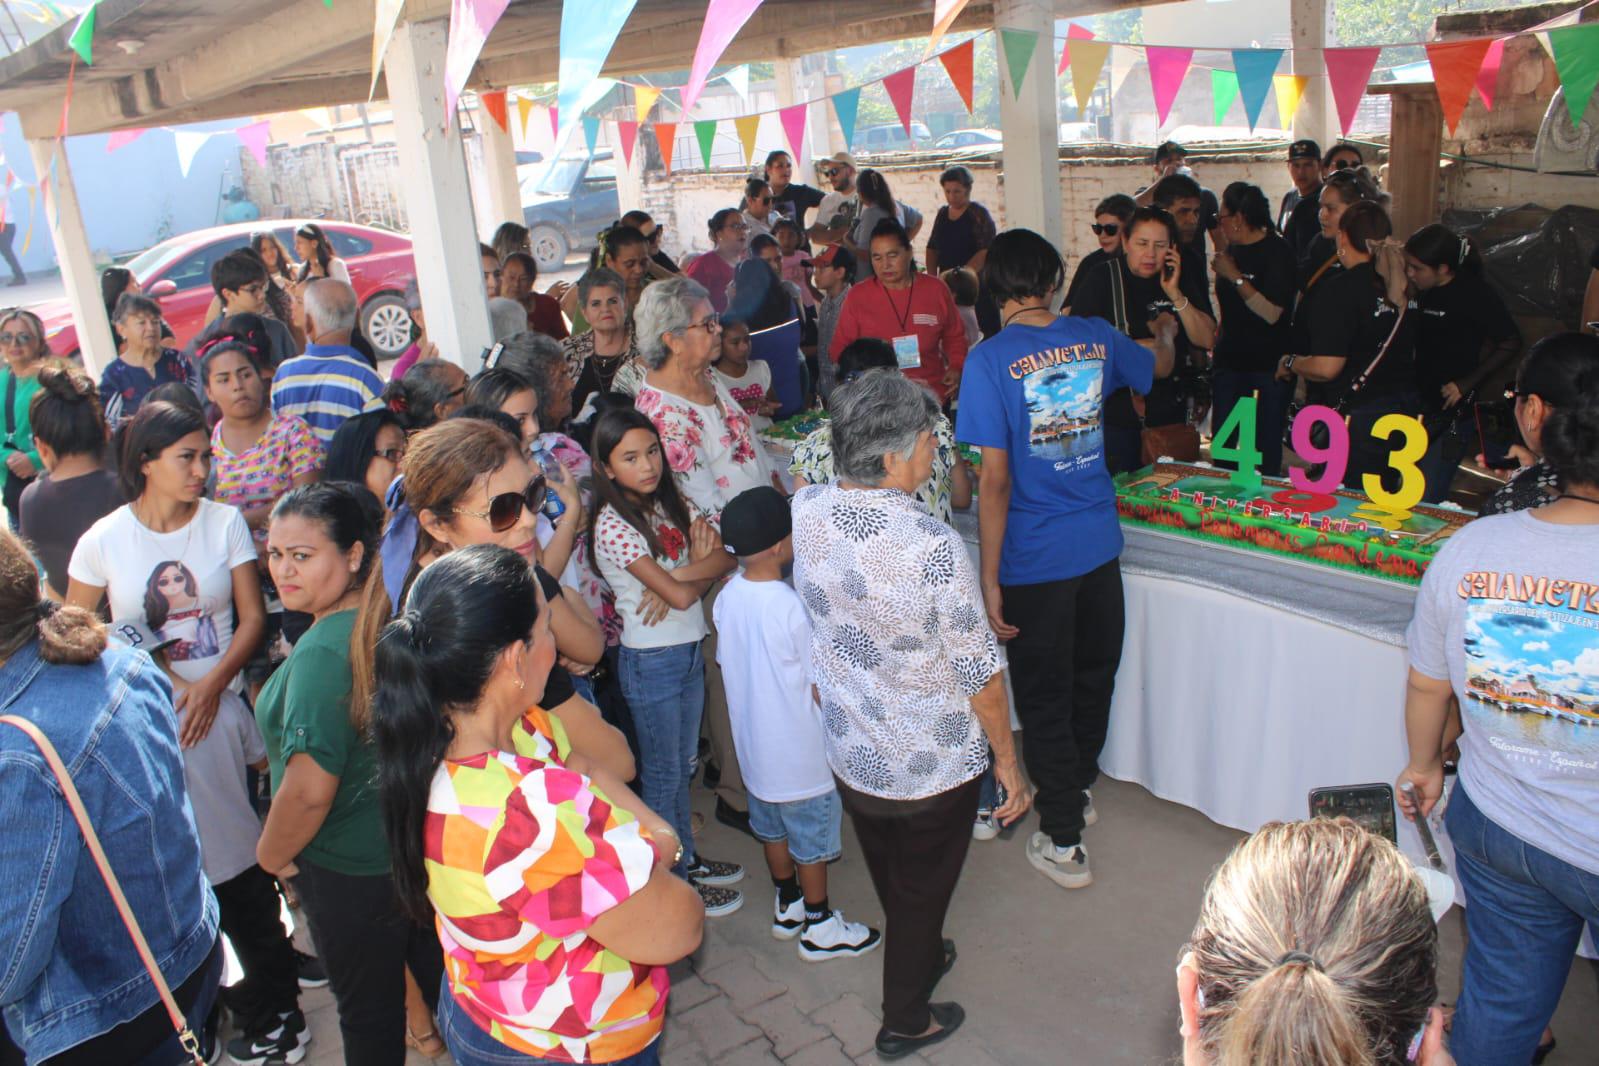 $!Comparten pastel y piñata monumental por el 493 aniversario del Mestizaje en Chametla